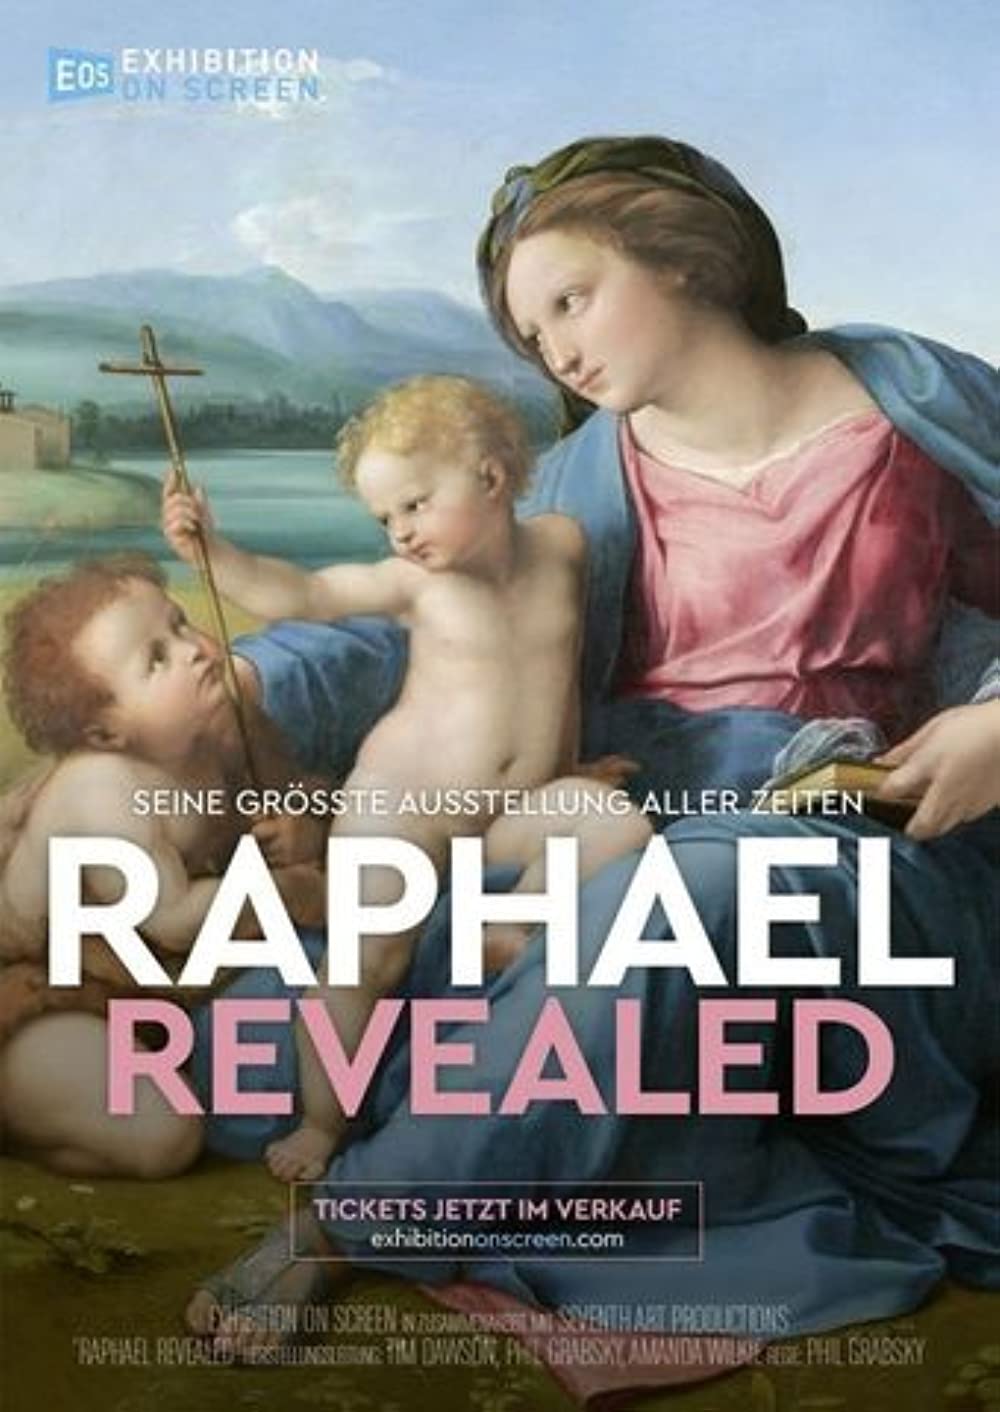 Filmbeschreibung zu Exhibition on Screen: Raphael Revealed (OV)